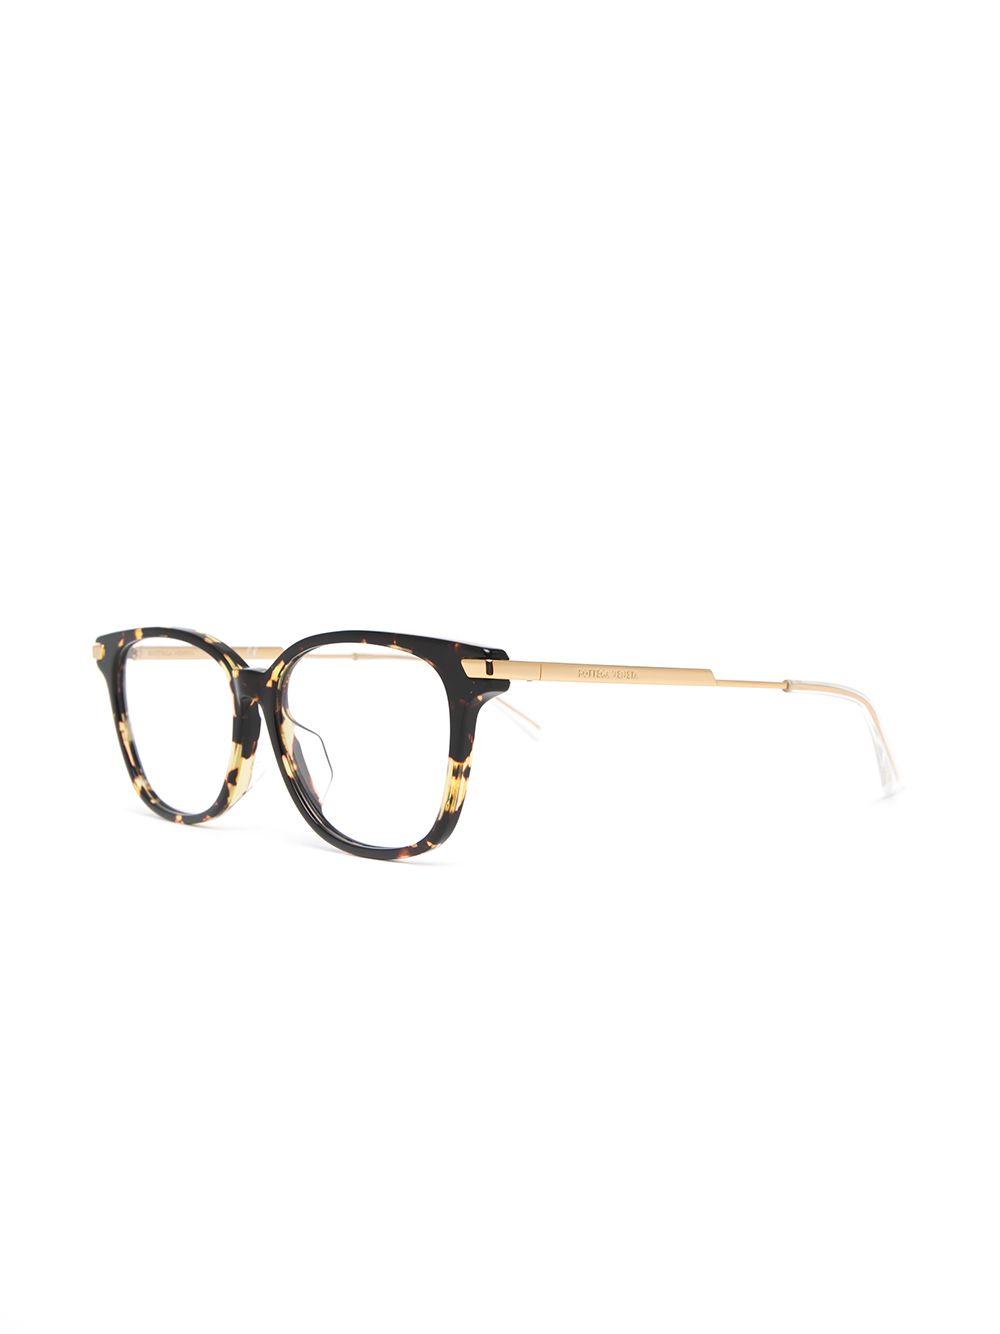 фото Bottega veneta eyewear очки в оправе черепаховой расцветки